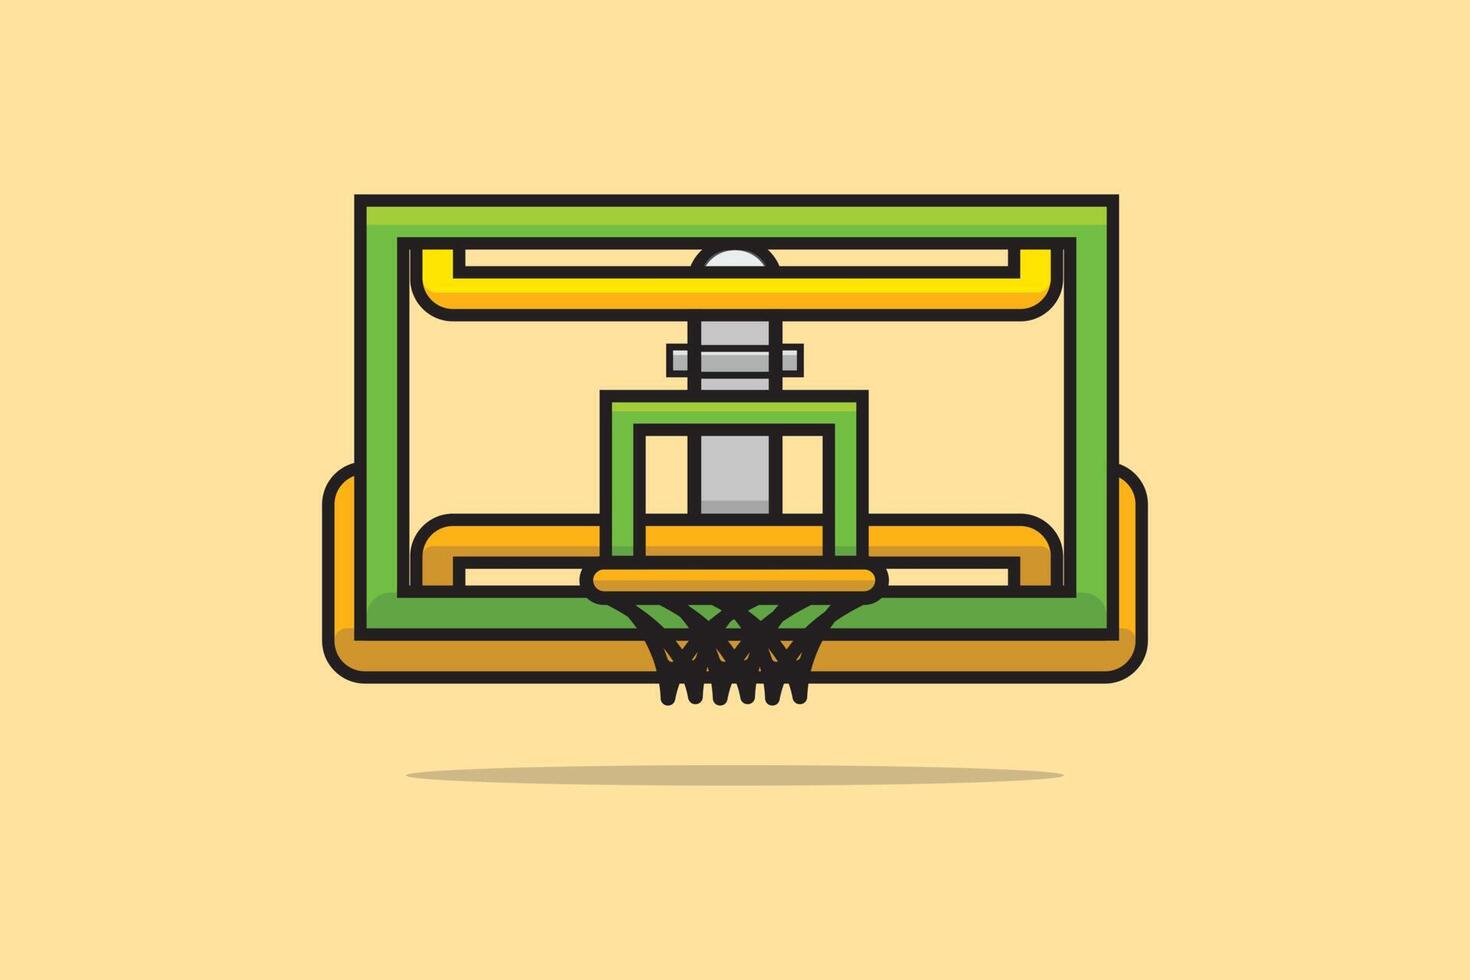 aro de bola de basquete e ilustração vetorial de anel. conceito de ícone de objetos esportivos. placa líquida de basquete com design de vetor de círculo redondo em fundo laranja com sombra.